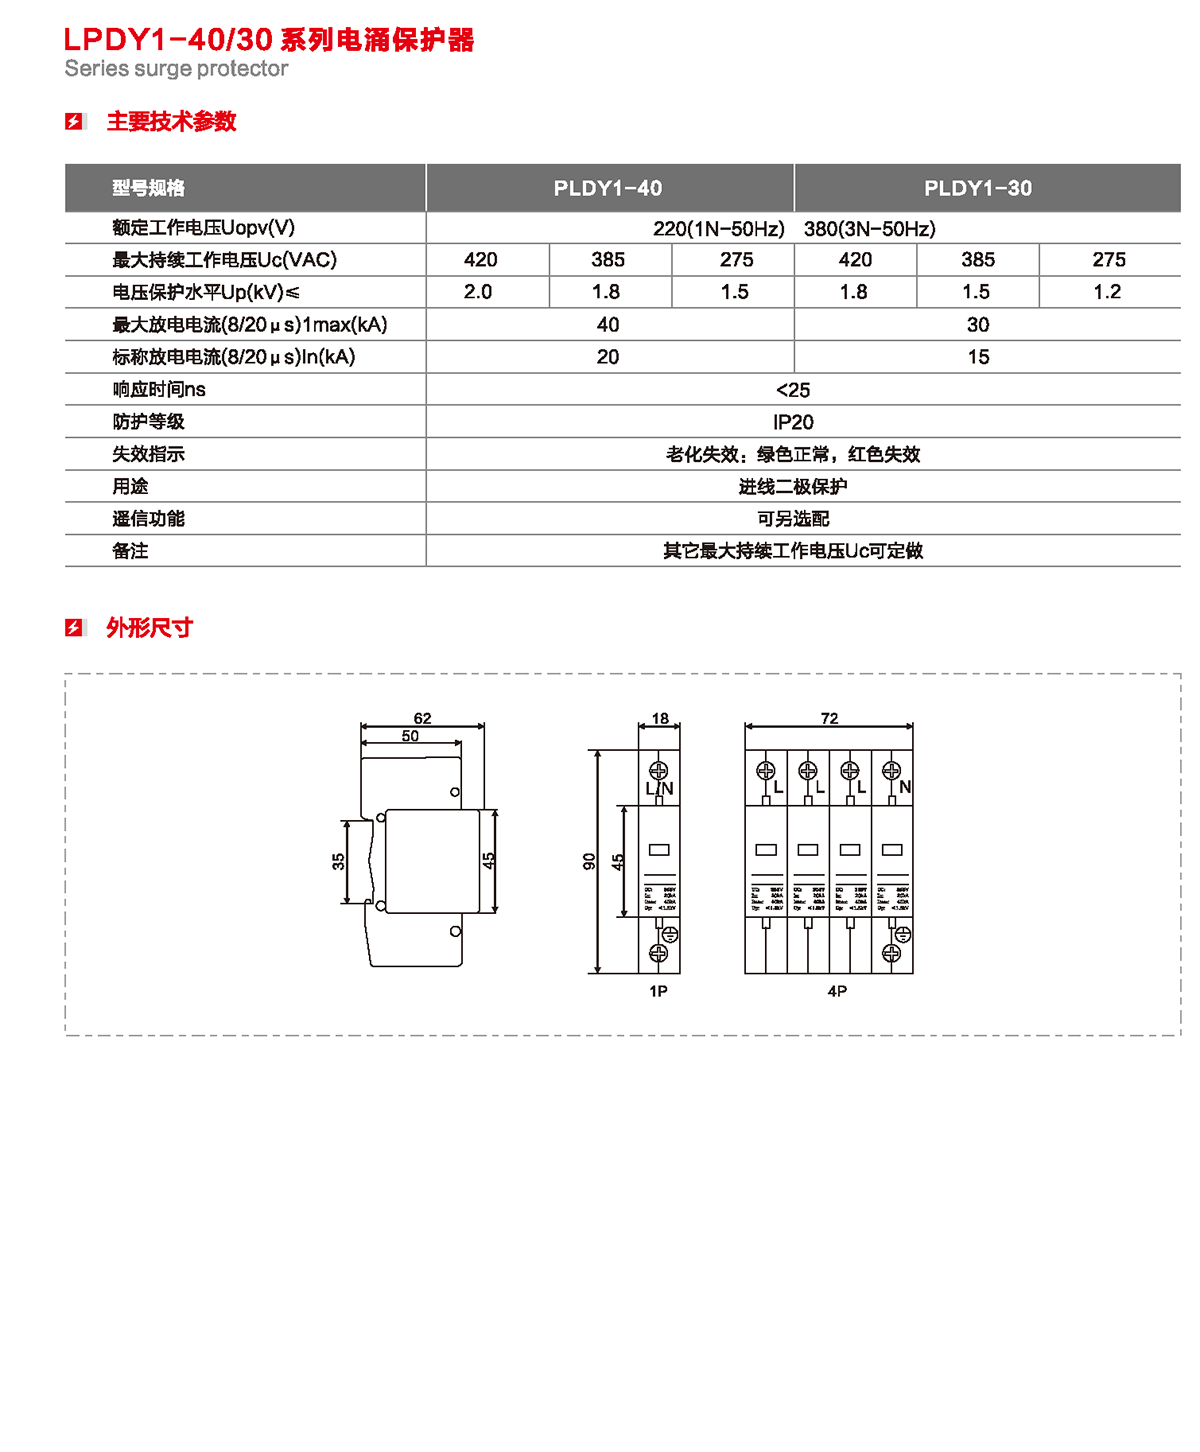 LPDY1-40/30系列電涌保護器產品詳情